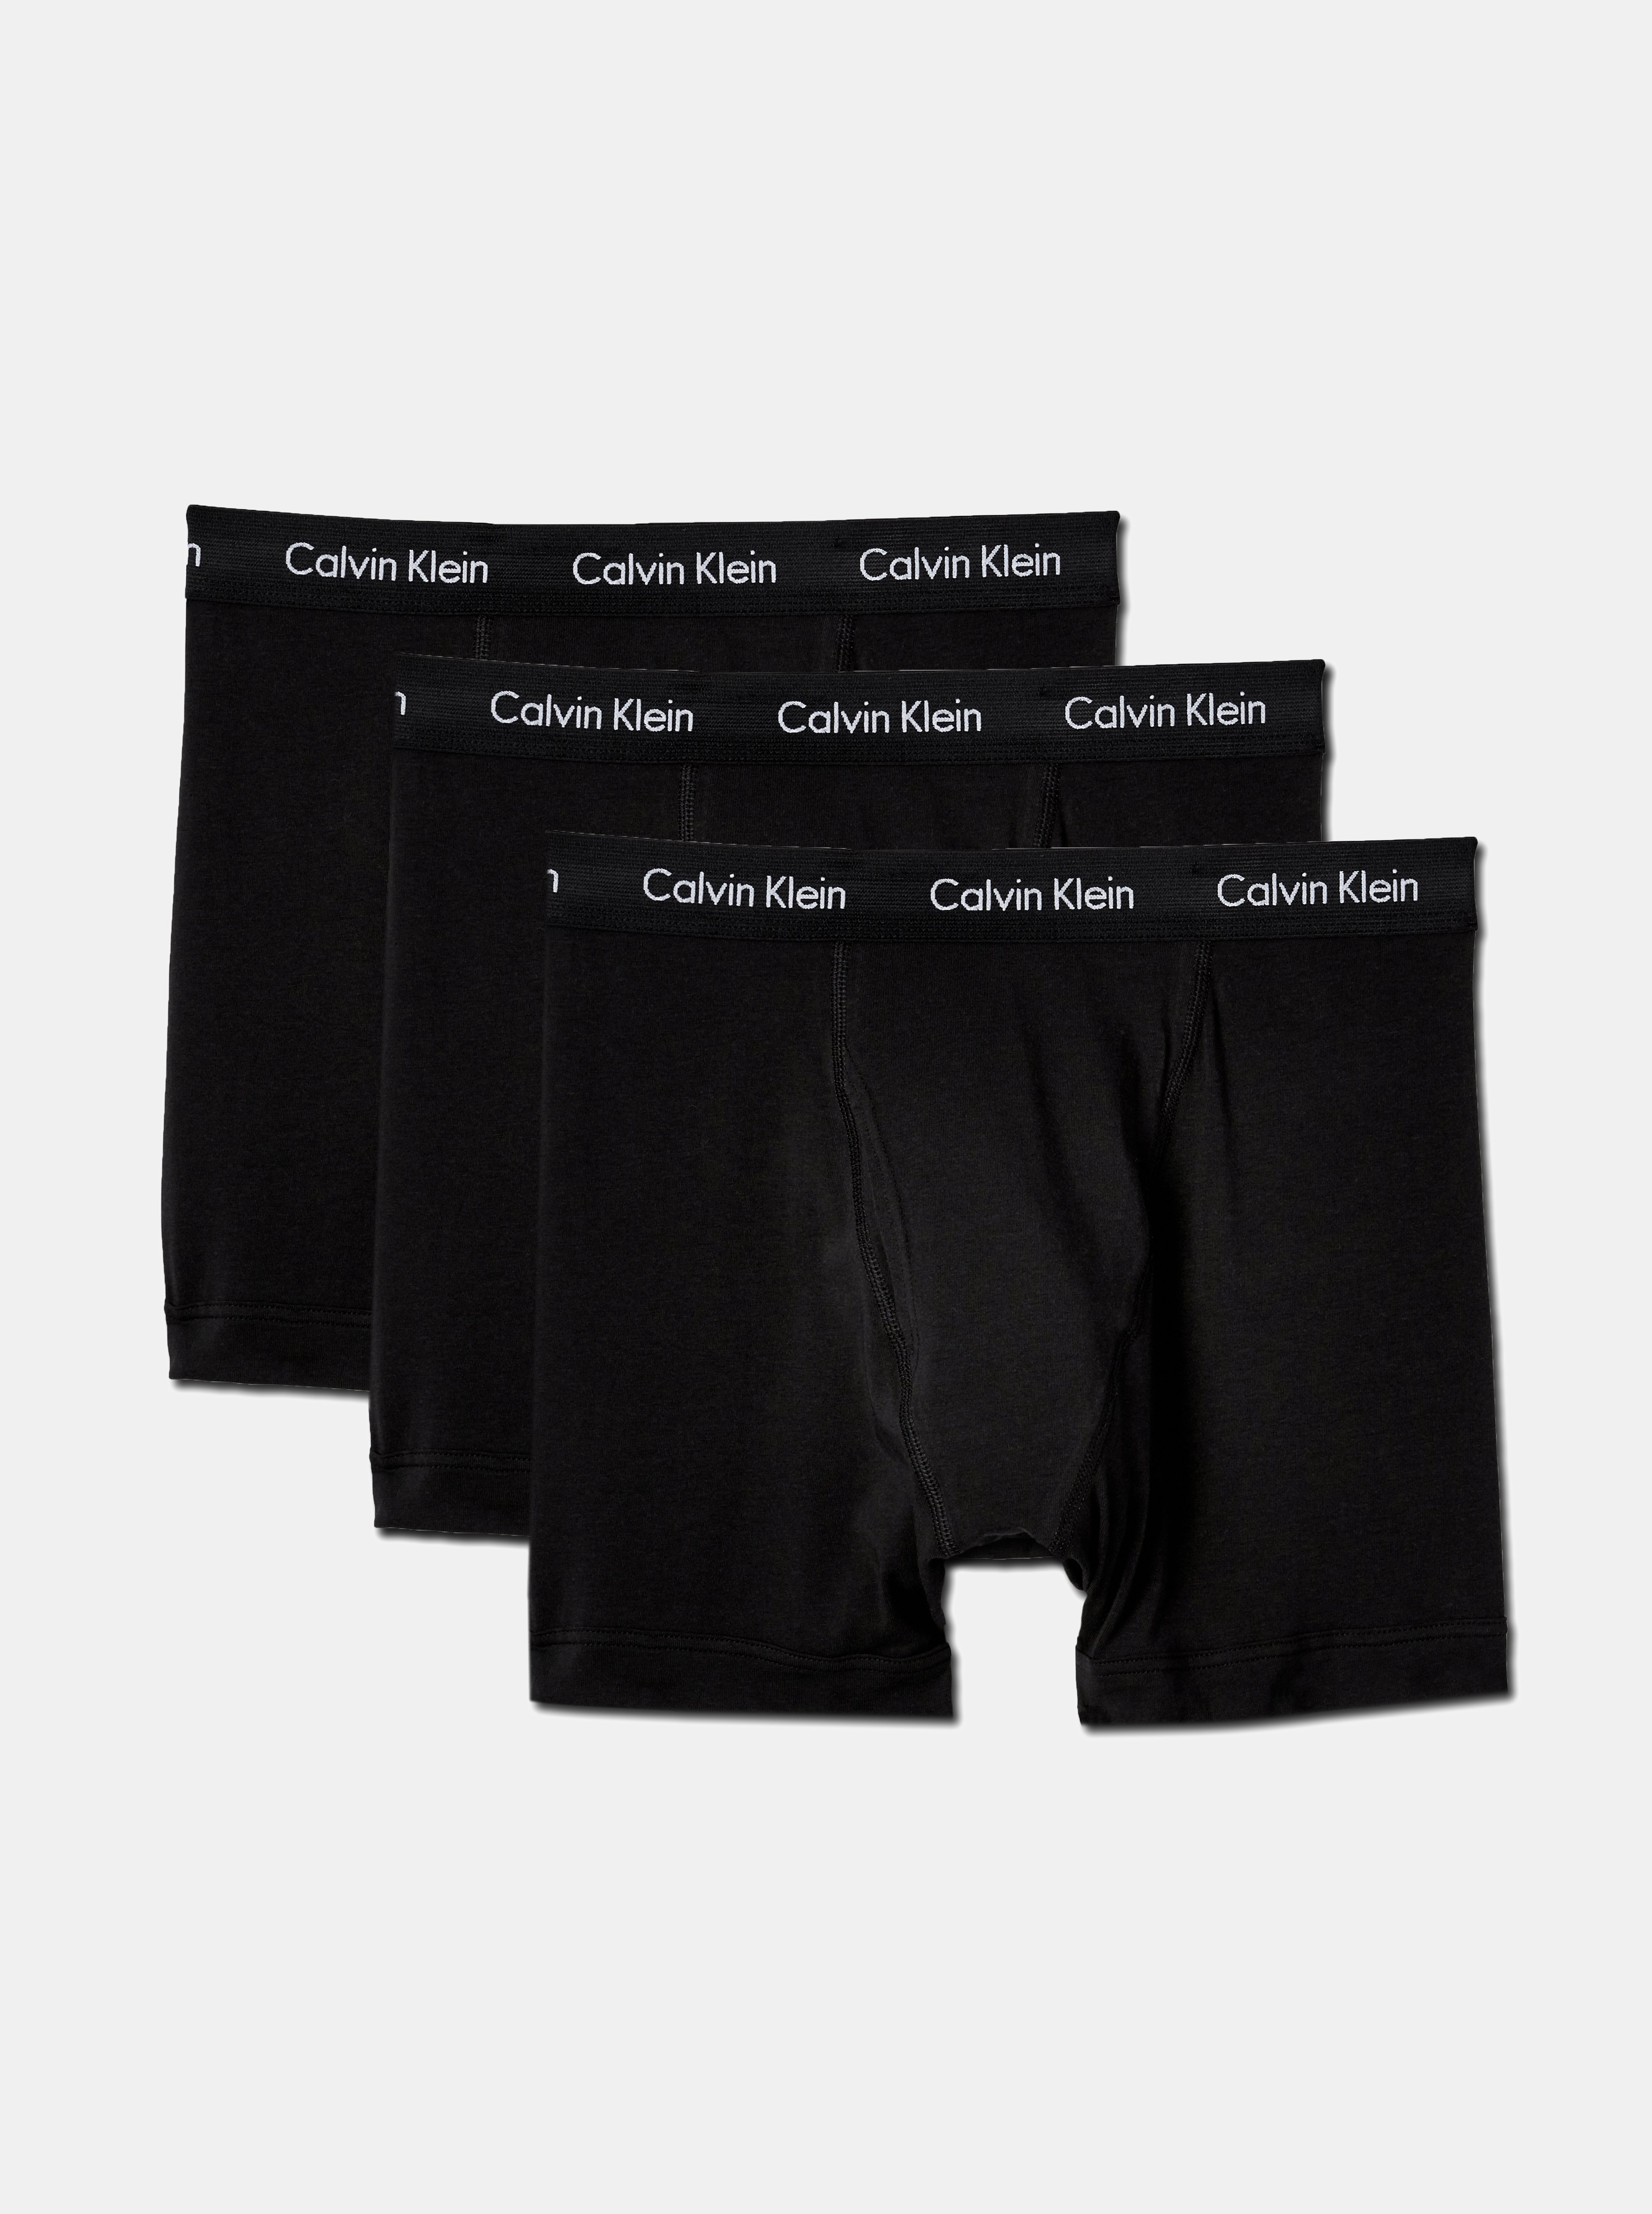 calvin klein underwear return policy